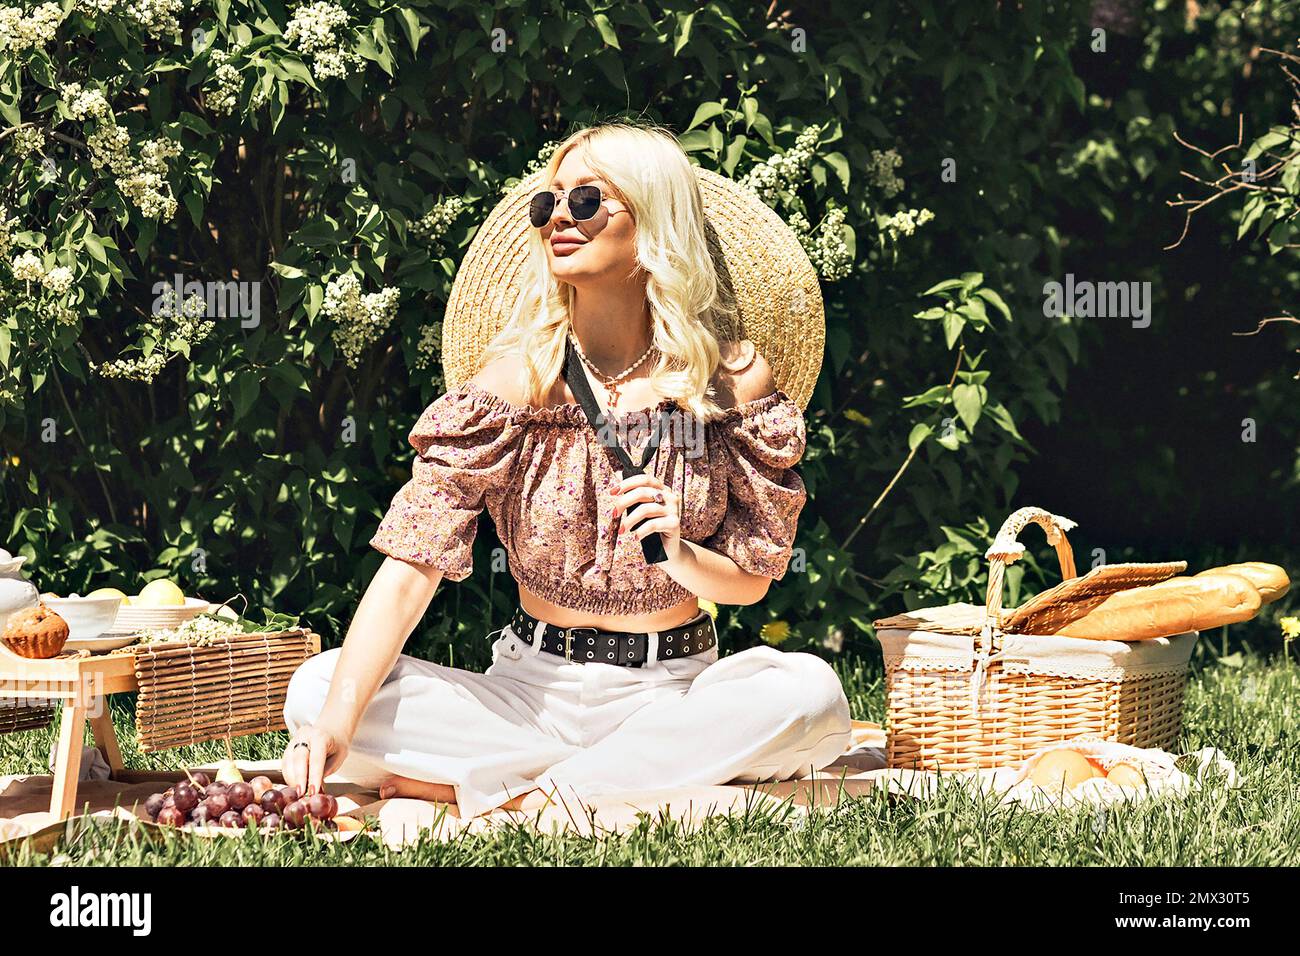 Photo d'une charmante jolie petite dame blonde qui tient une fraise dans sa main. Activités de plein air, pique-nique d'été. Banque D'Images